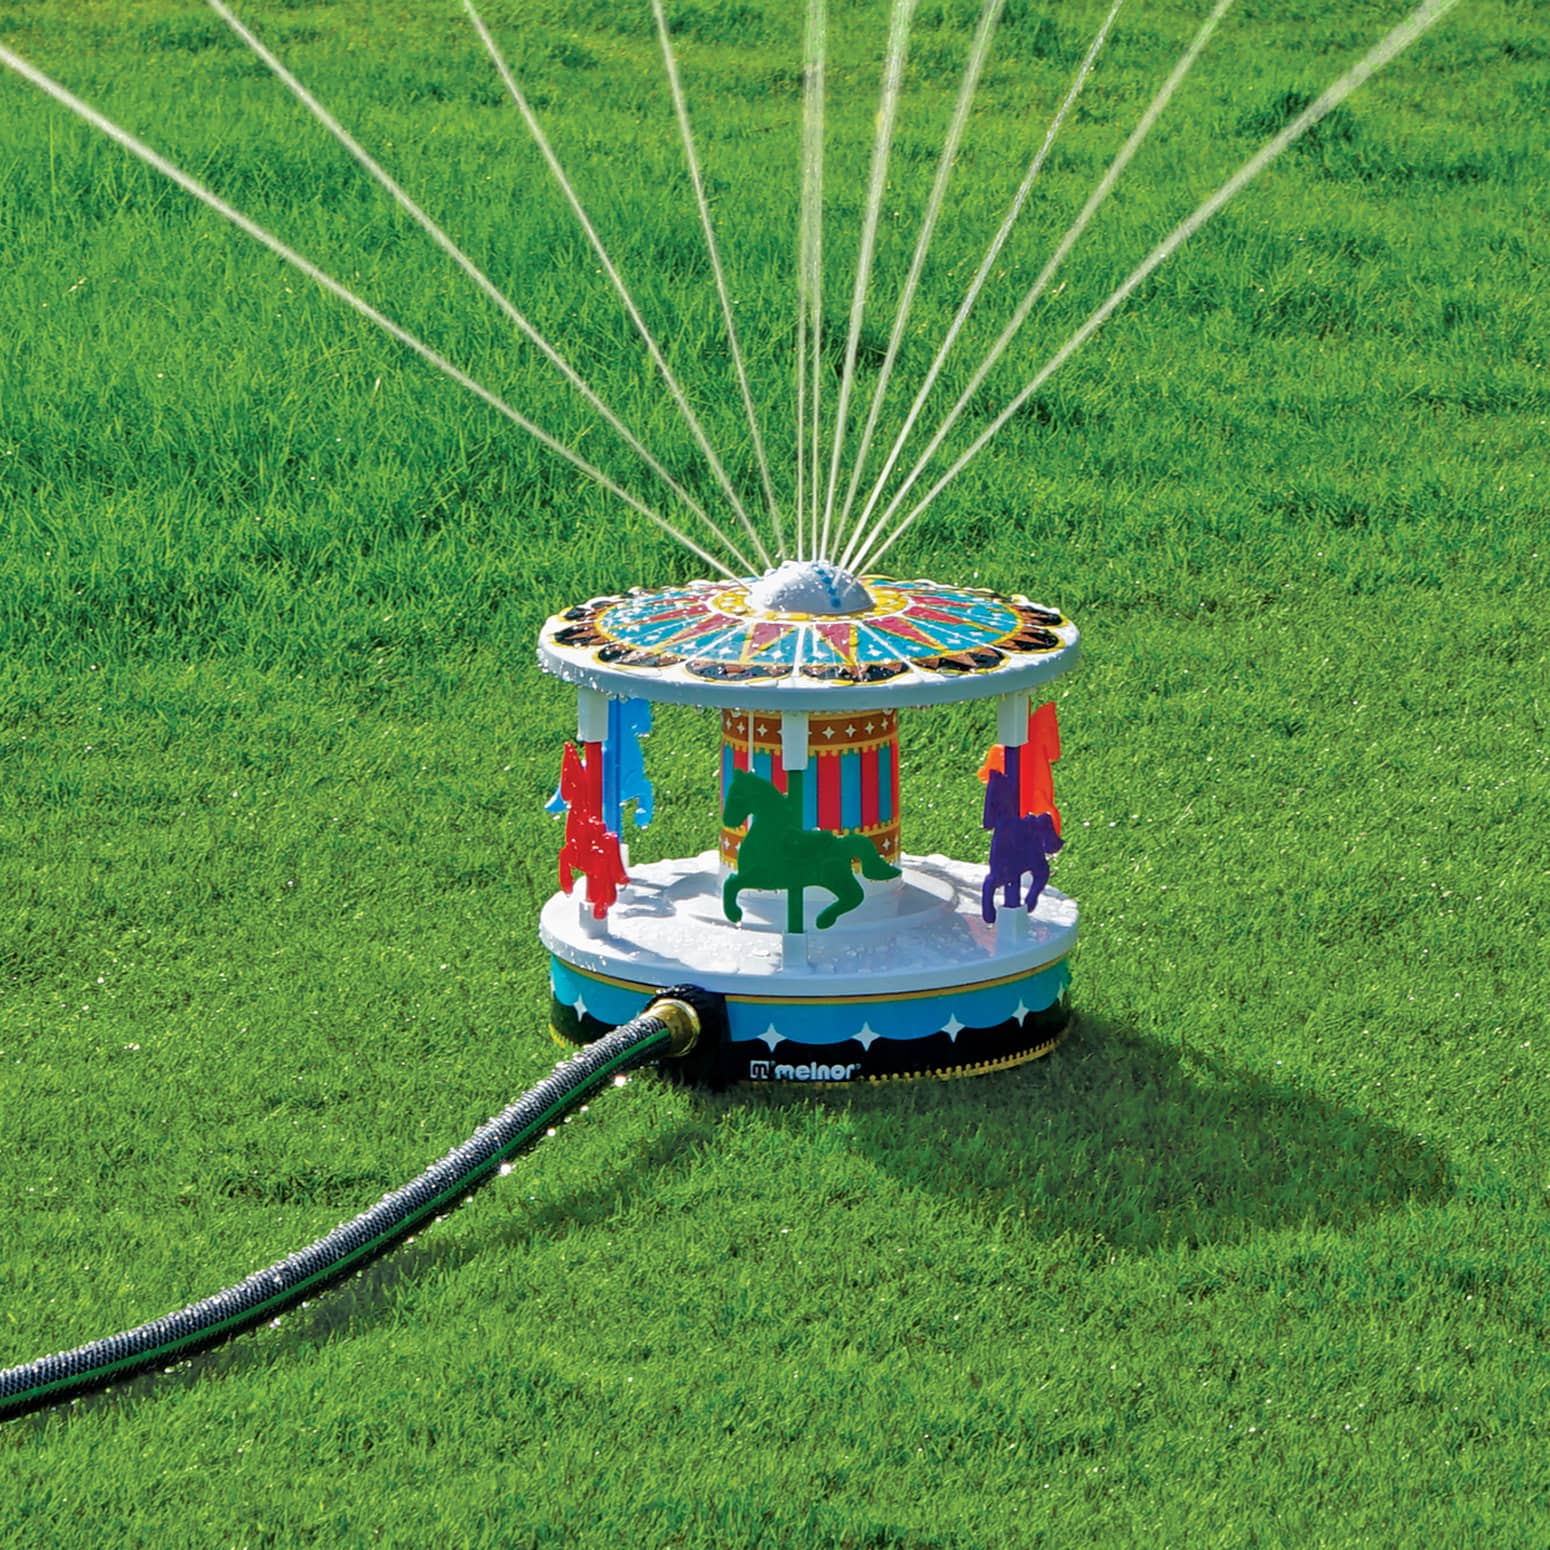 Merry-Go-Round Lawn Sprinkler